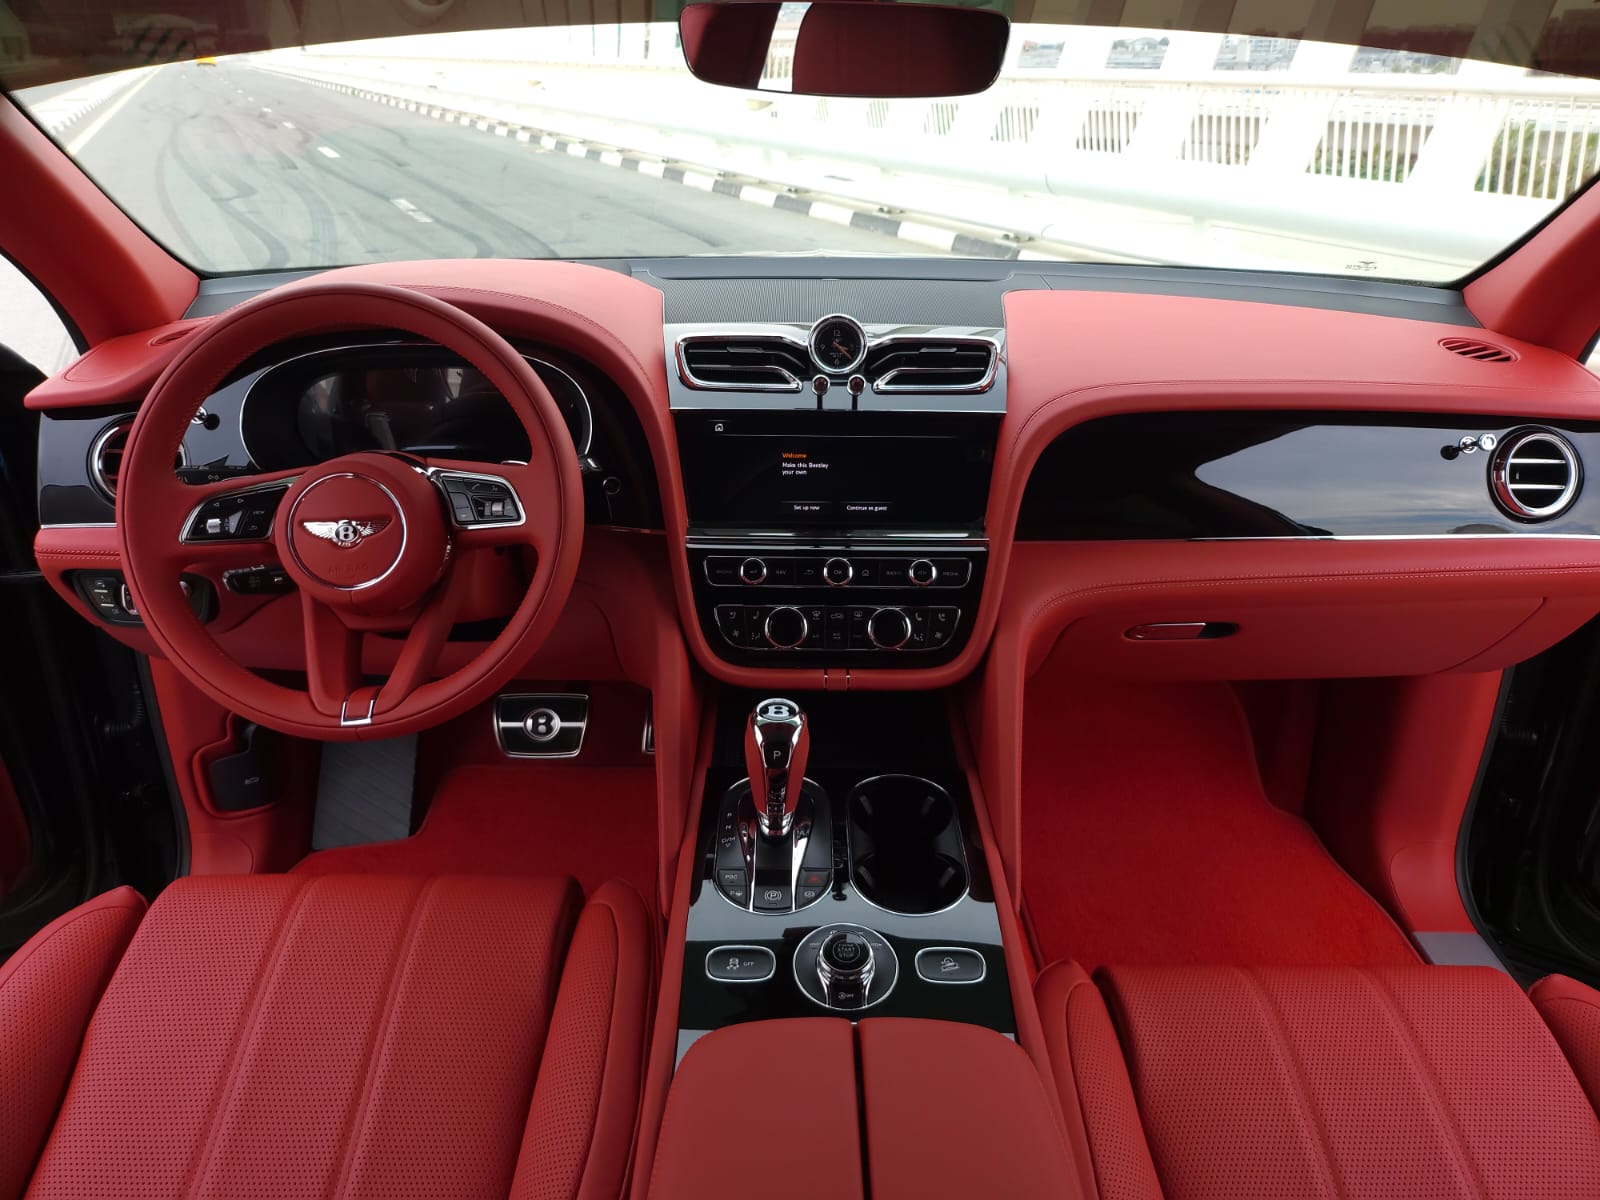 Bentley Bentayga car rental